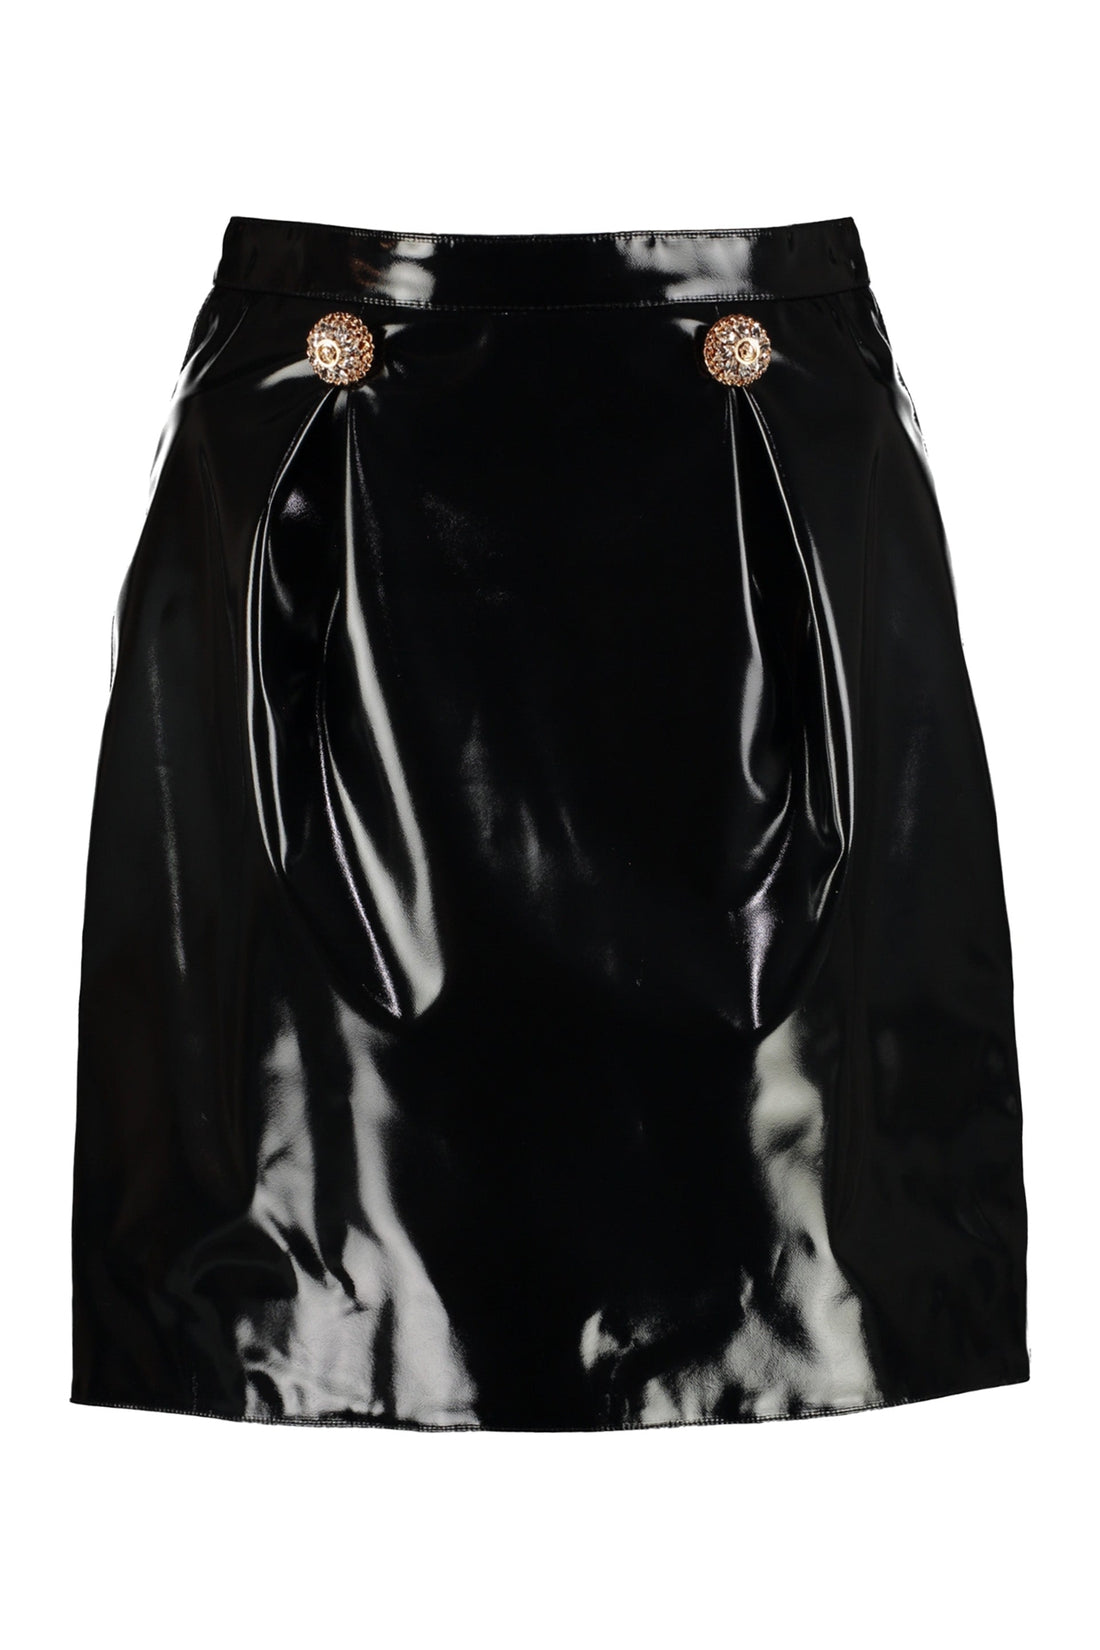 Versace-OUTLET-SALE-Faux leather mini skirt-ARCHIVIST